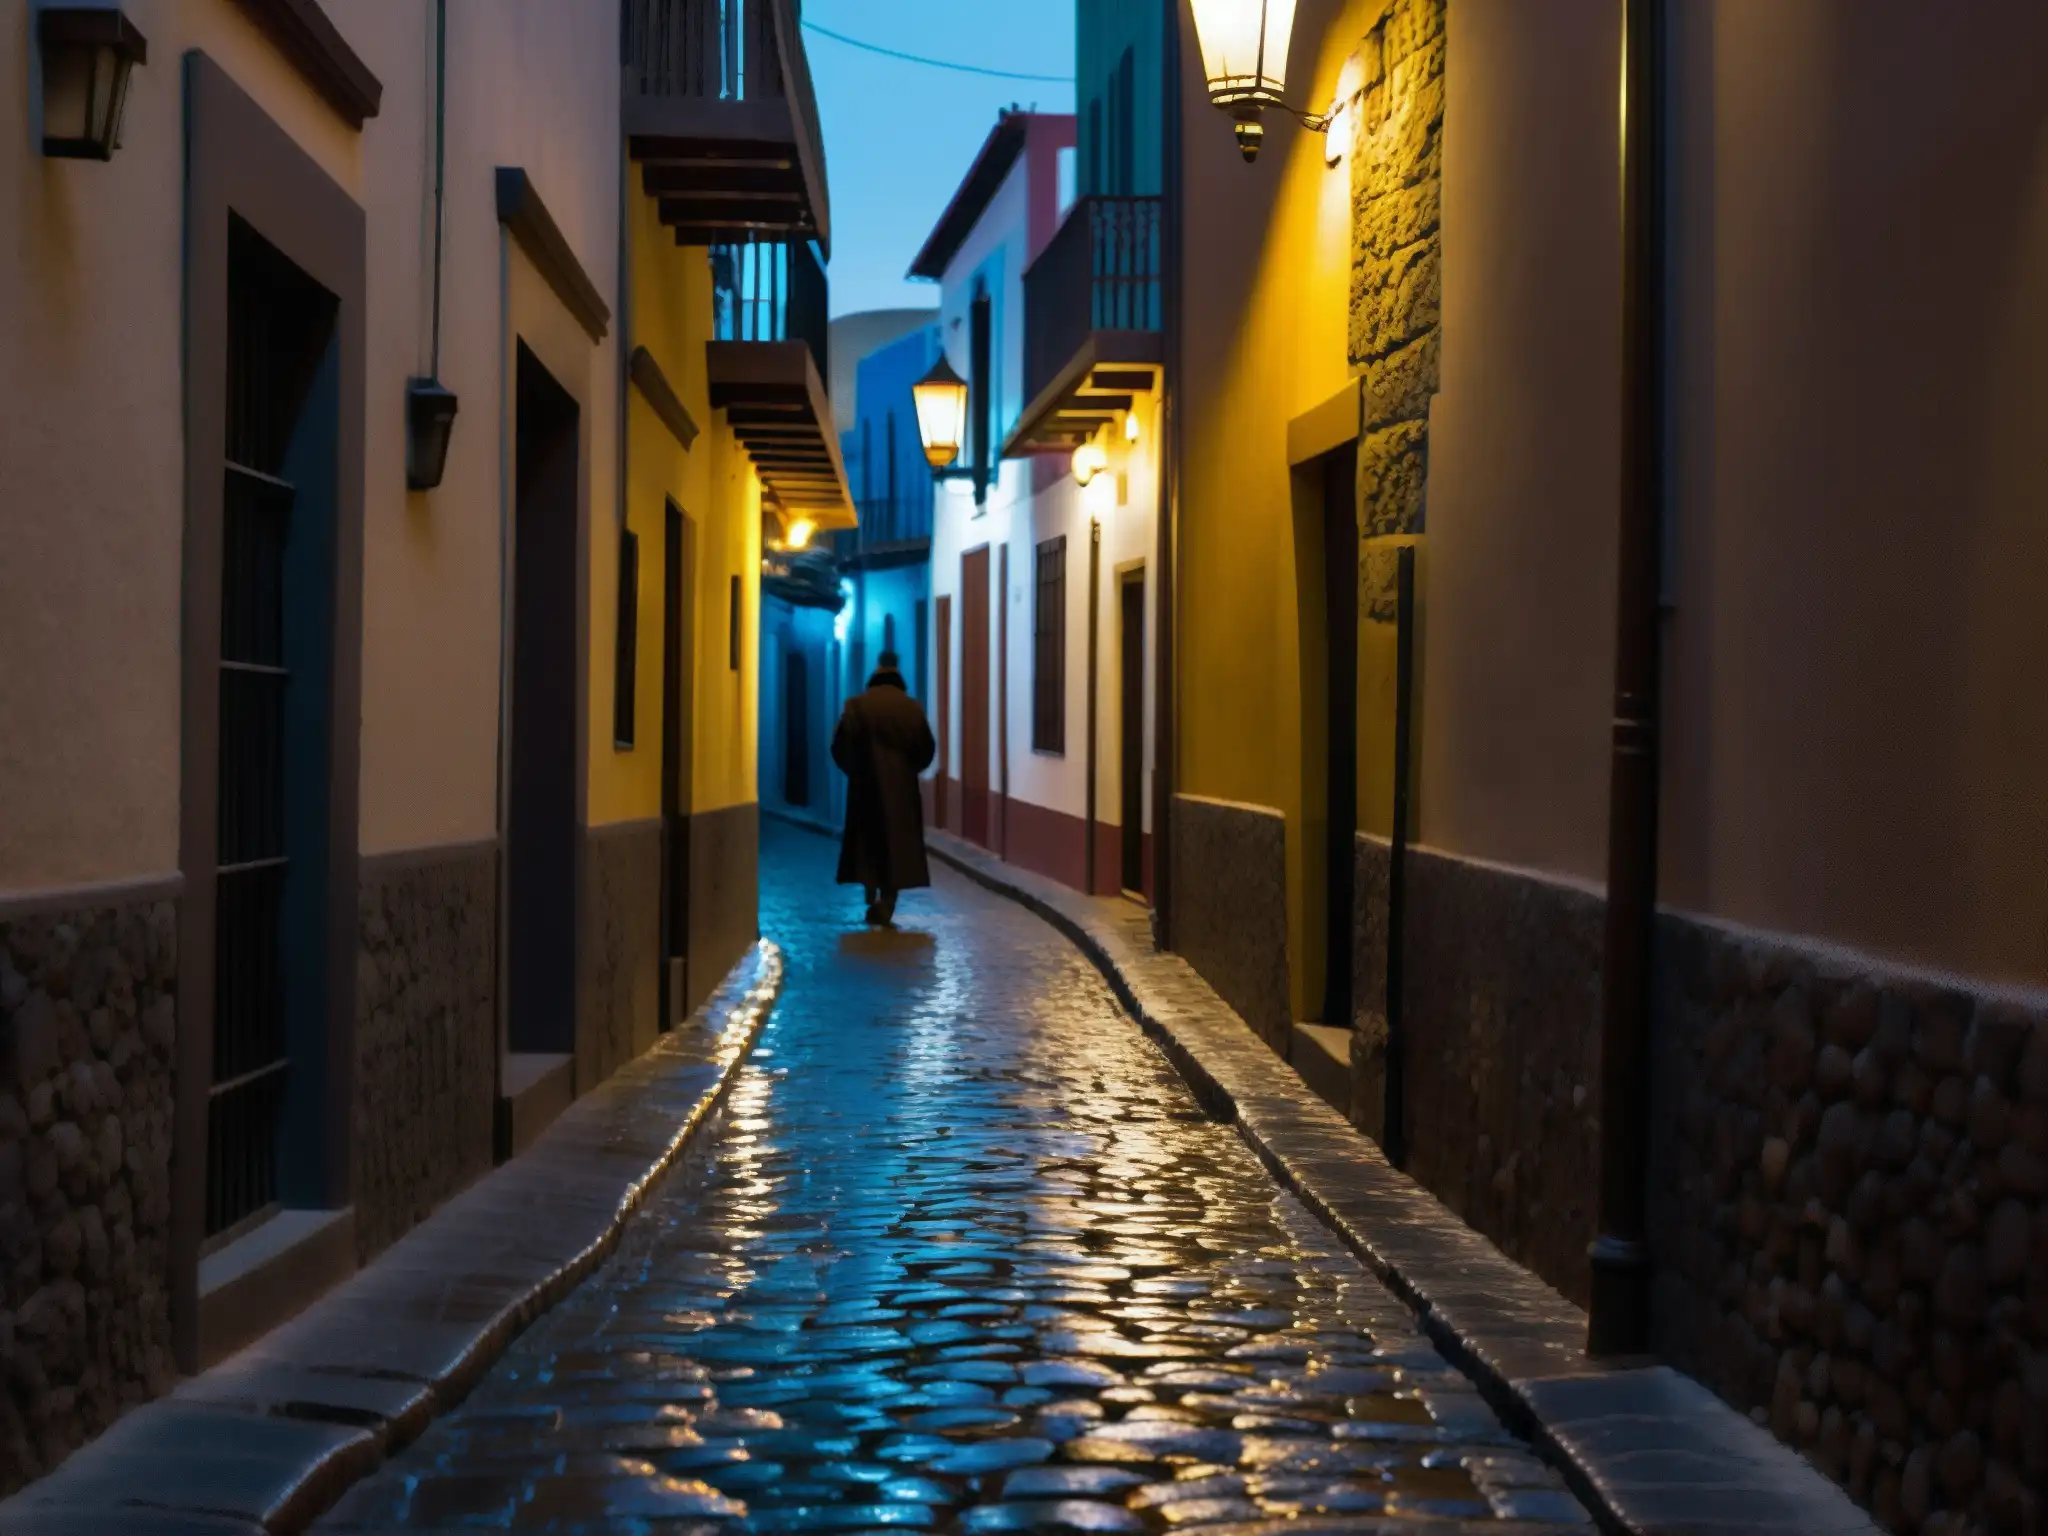 En una oscura y solitaria callejuela de Querétaro, México, una figura se aleja entre sombras